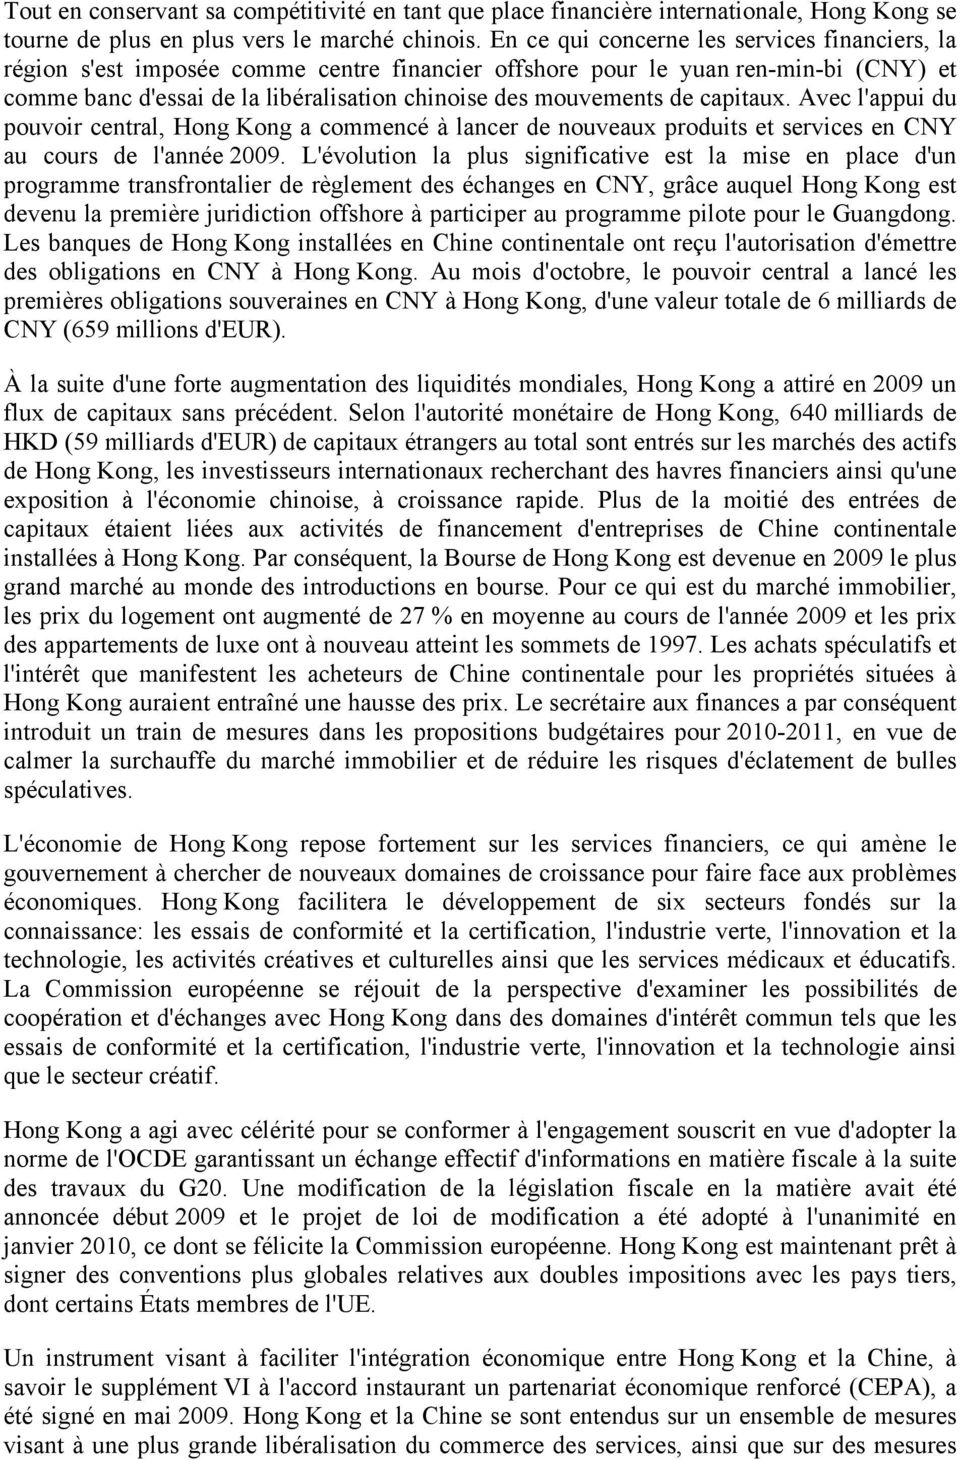 capitaux. Avec l'appui du pouvoir central, Hong Kong a commencé à lancer de nouveaux produits et services en CNY au cours de l'année 2009.